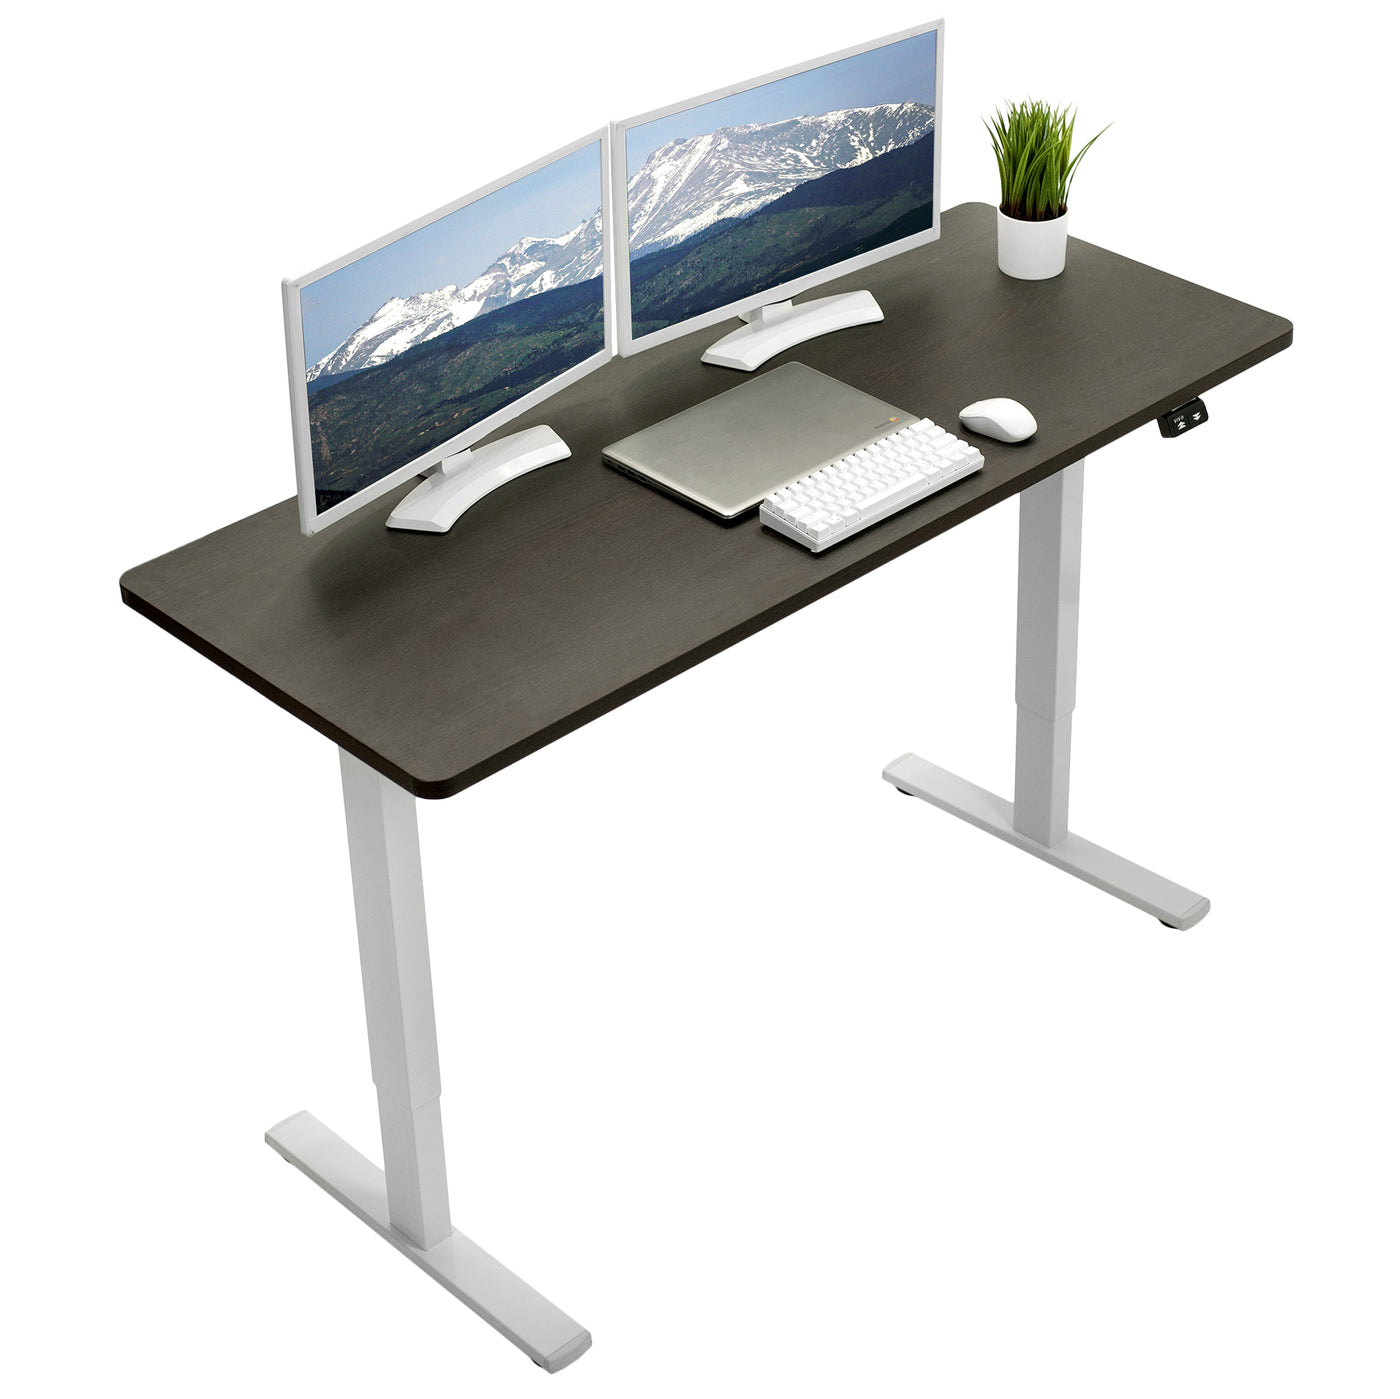 VIVO - Mesa/tablero universal de 1.52 mx 60 cm (60 x 24 in) para escritorio  de oficina y hogar con altura ajustable.